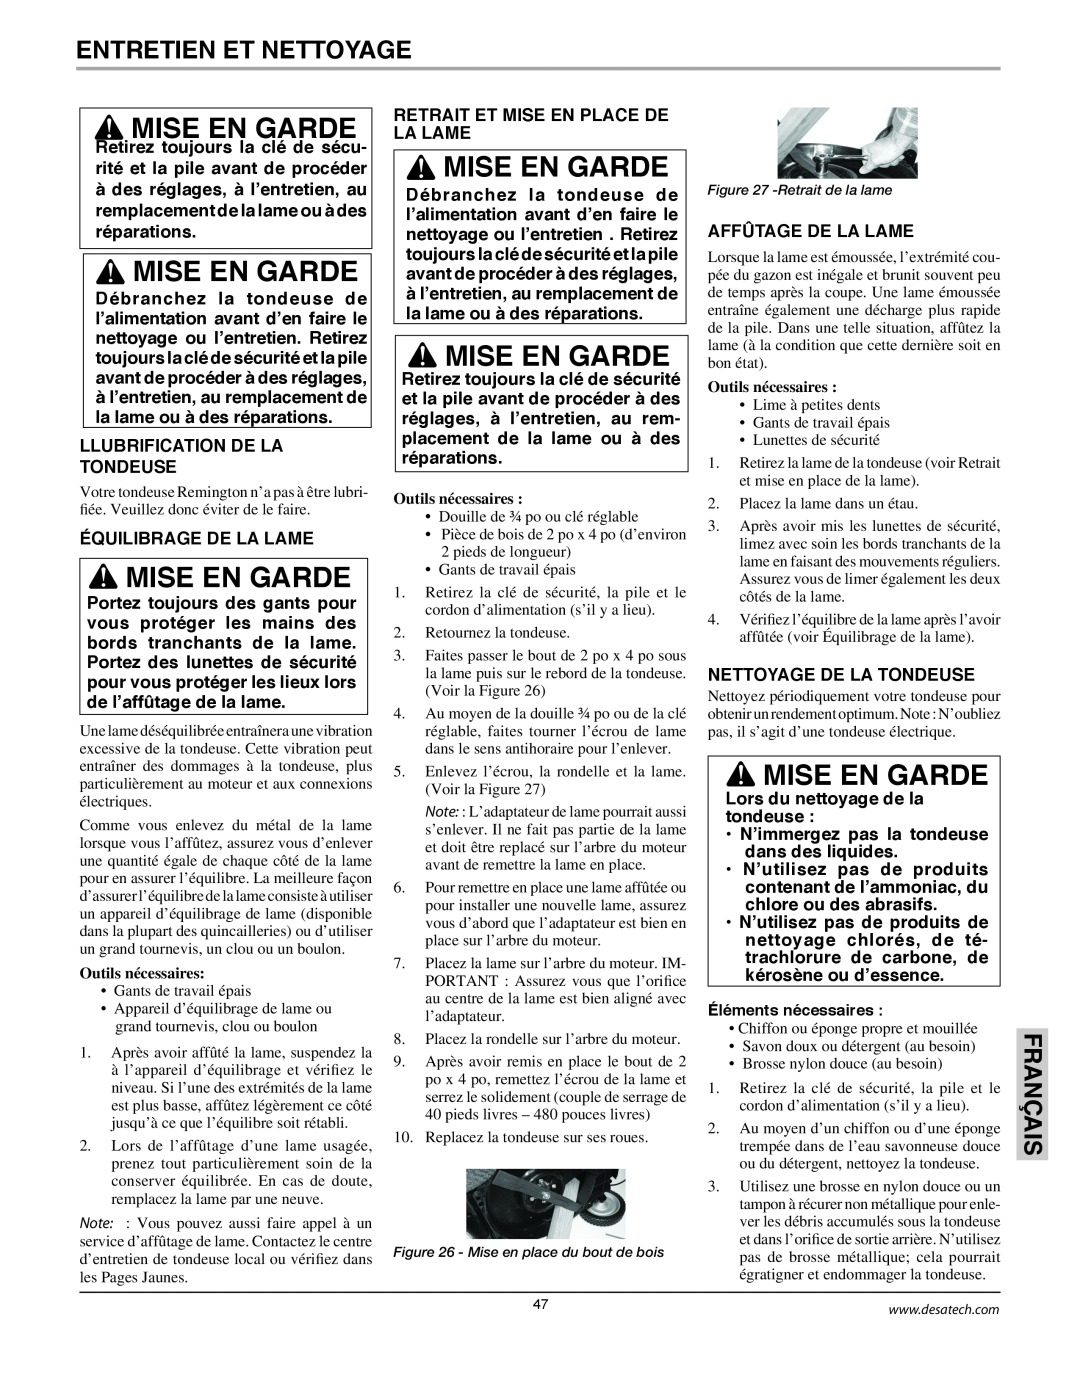 Remington Power Tools MPS6017A manual Entretien Et Nettoyage, Mise En Garde, Français, Llubrification De La Tondeuse 